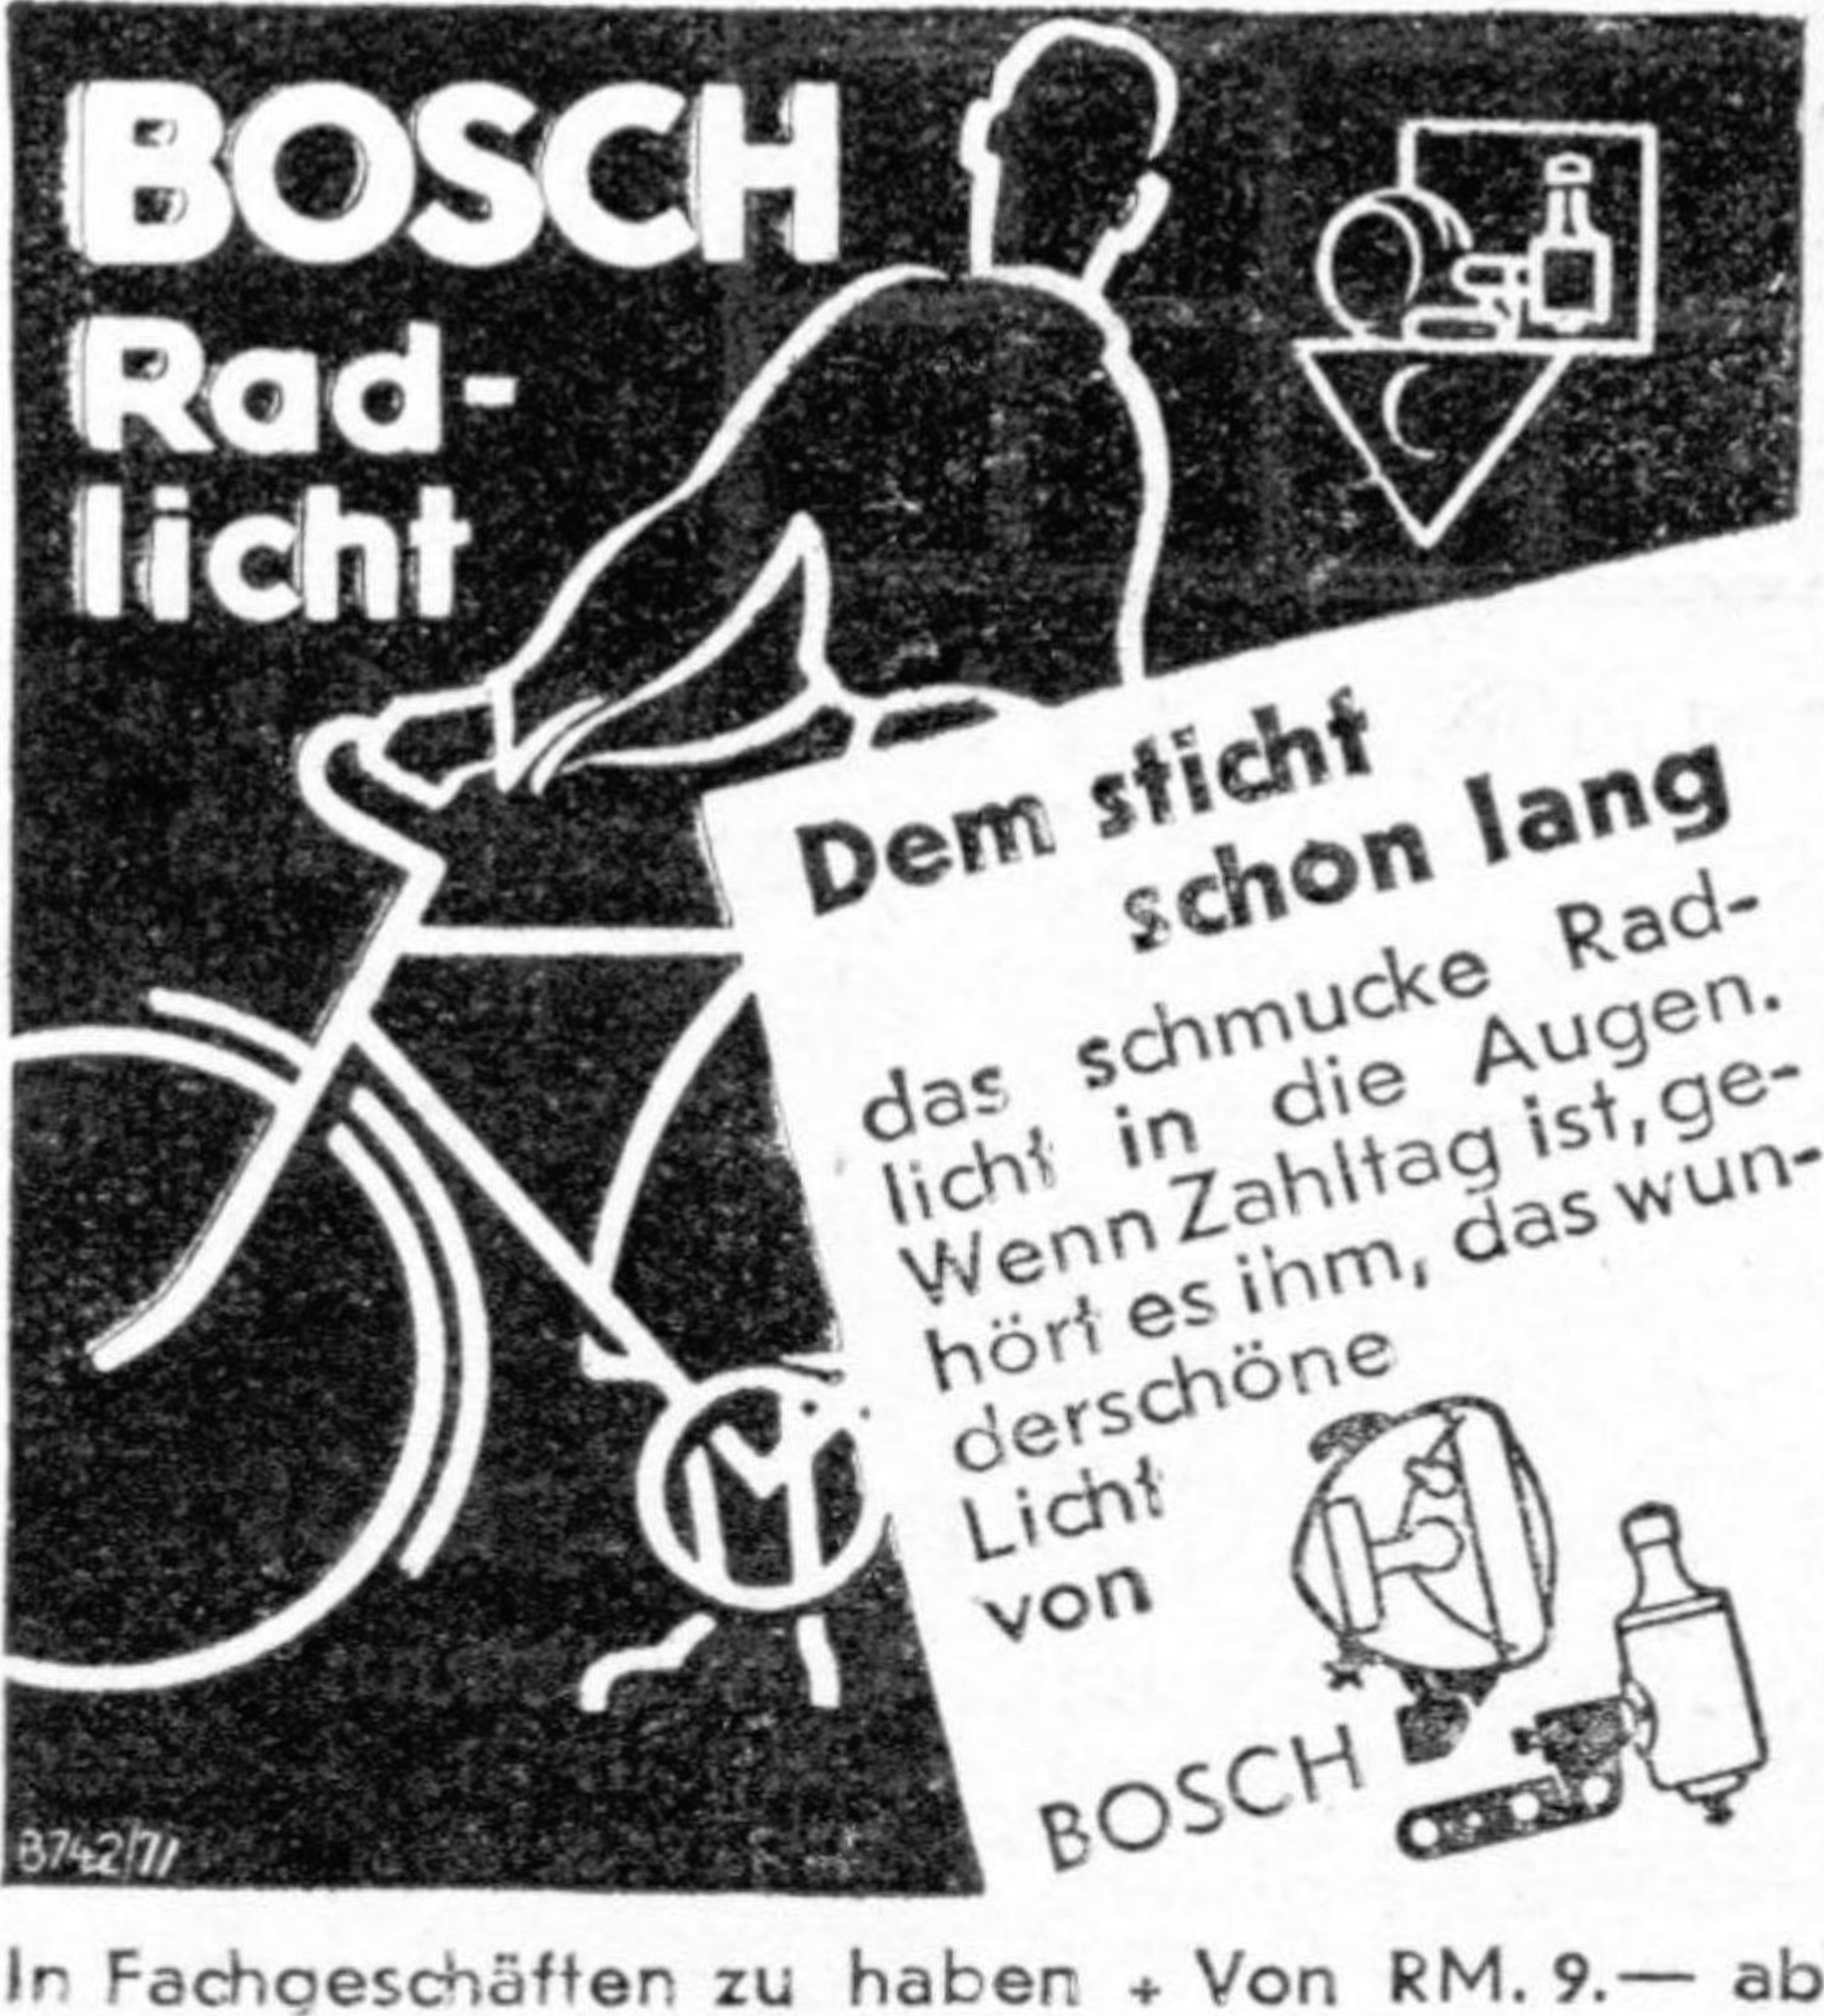 Bosch 1934 292.jpg